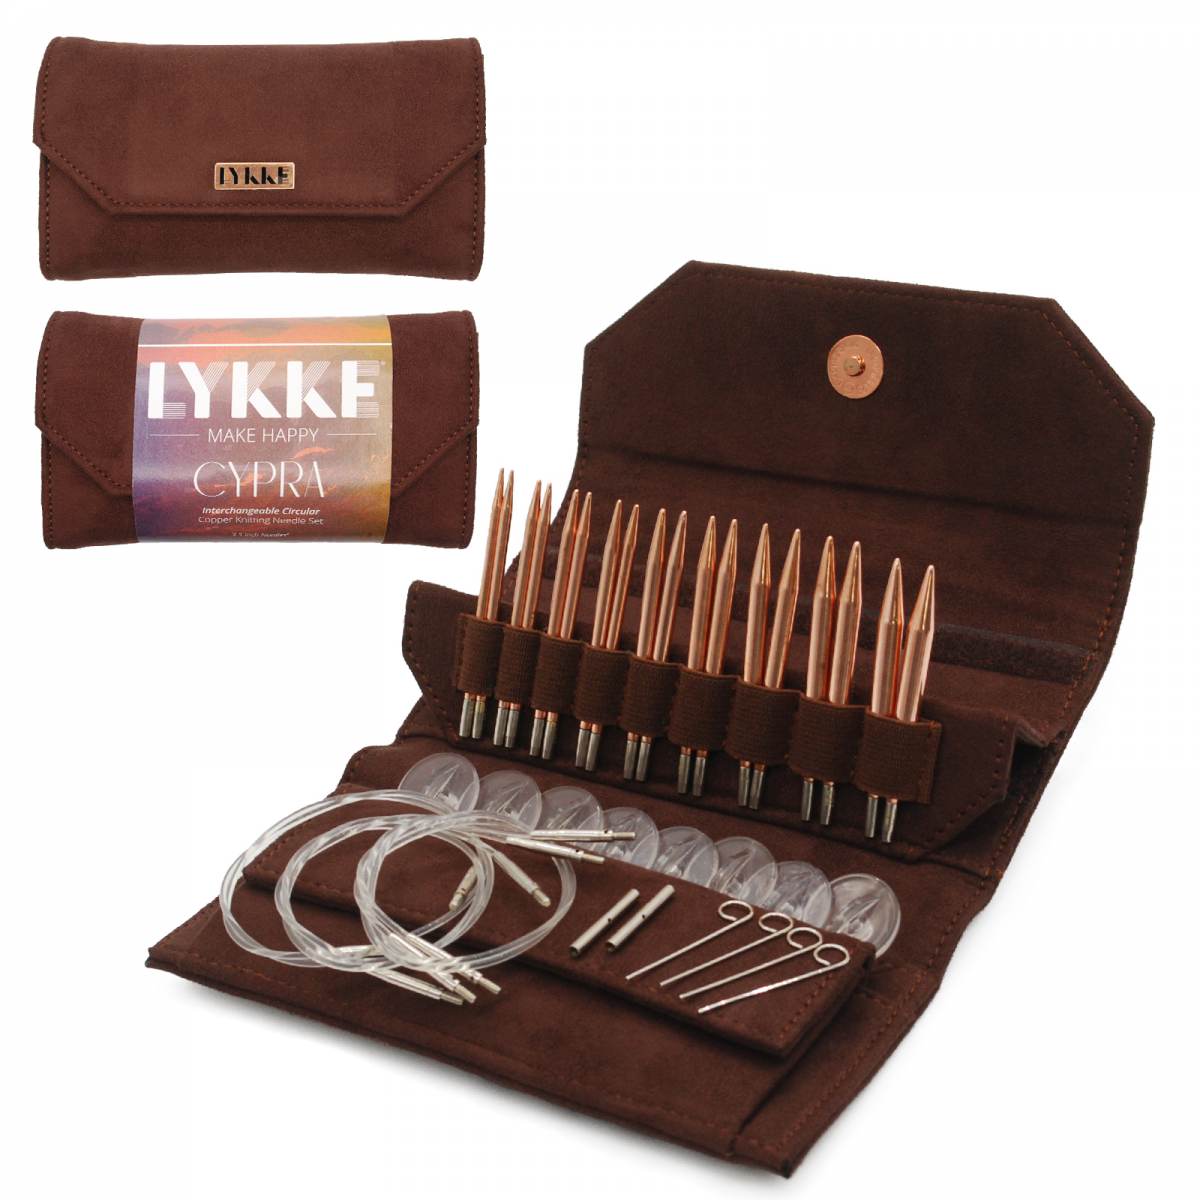 Lykke Cypra Interchangeable Copper Knitting Needle Set